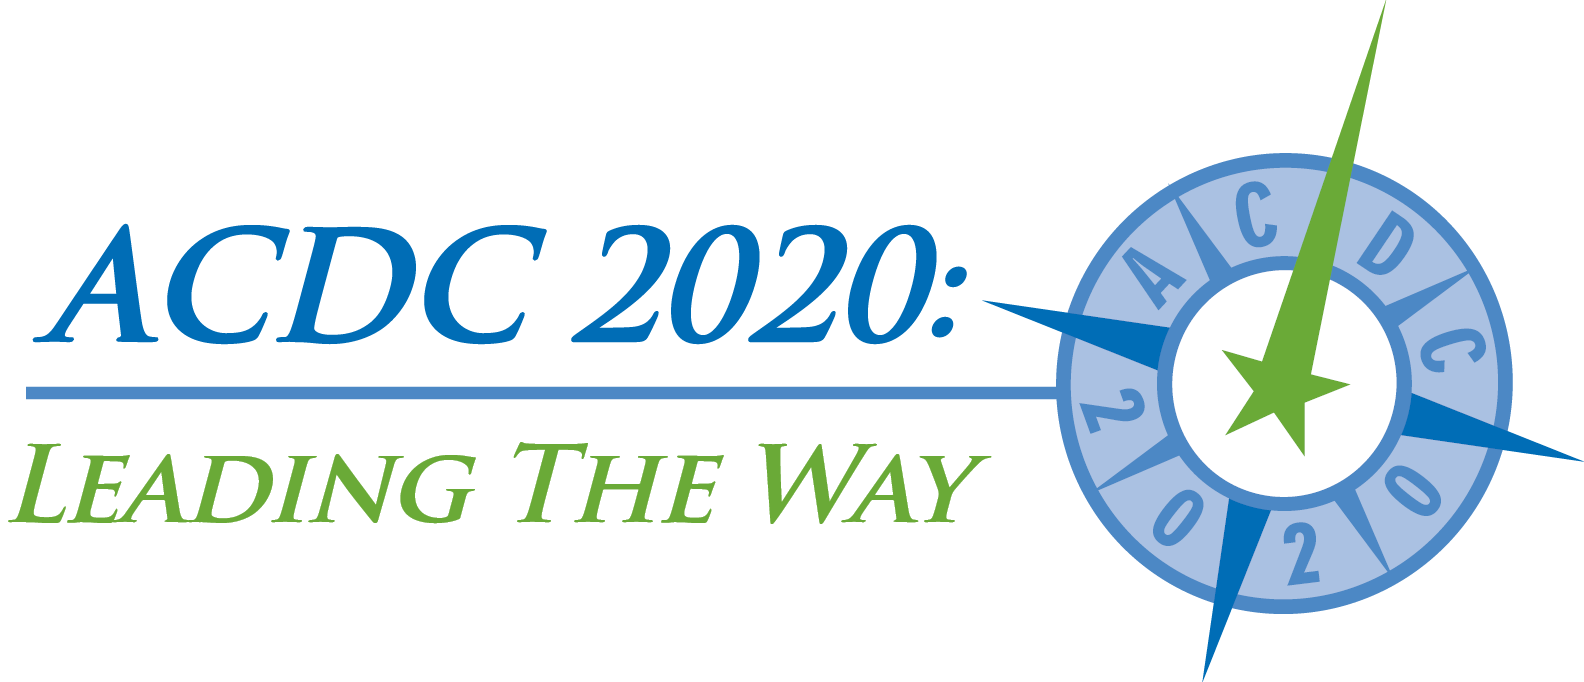 Cdaa Acdc 2020 Leading The Way